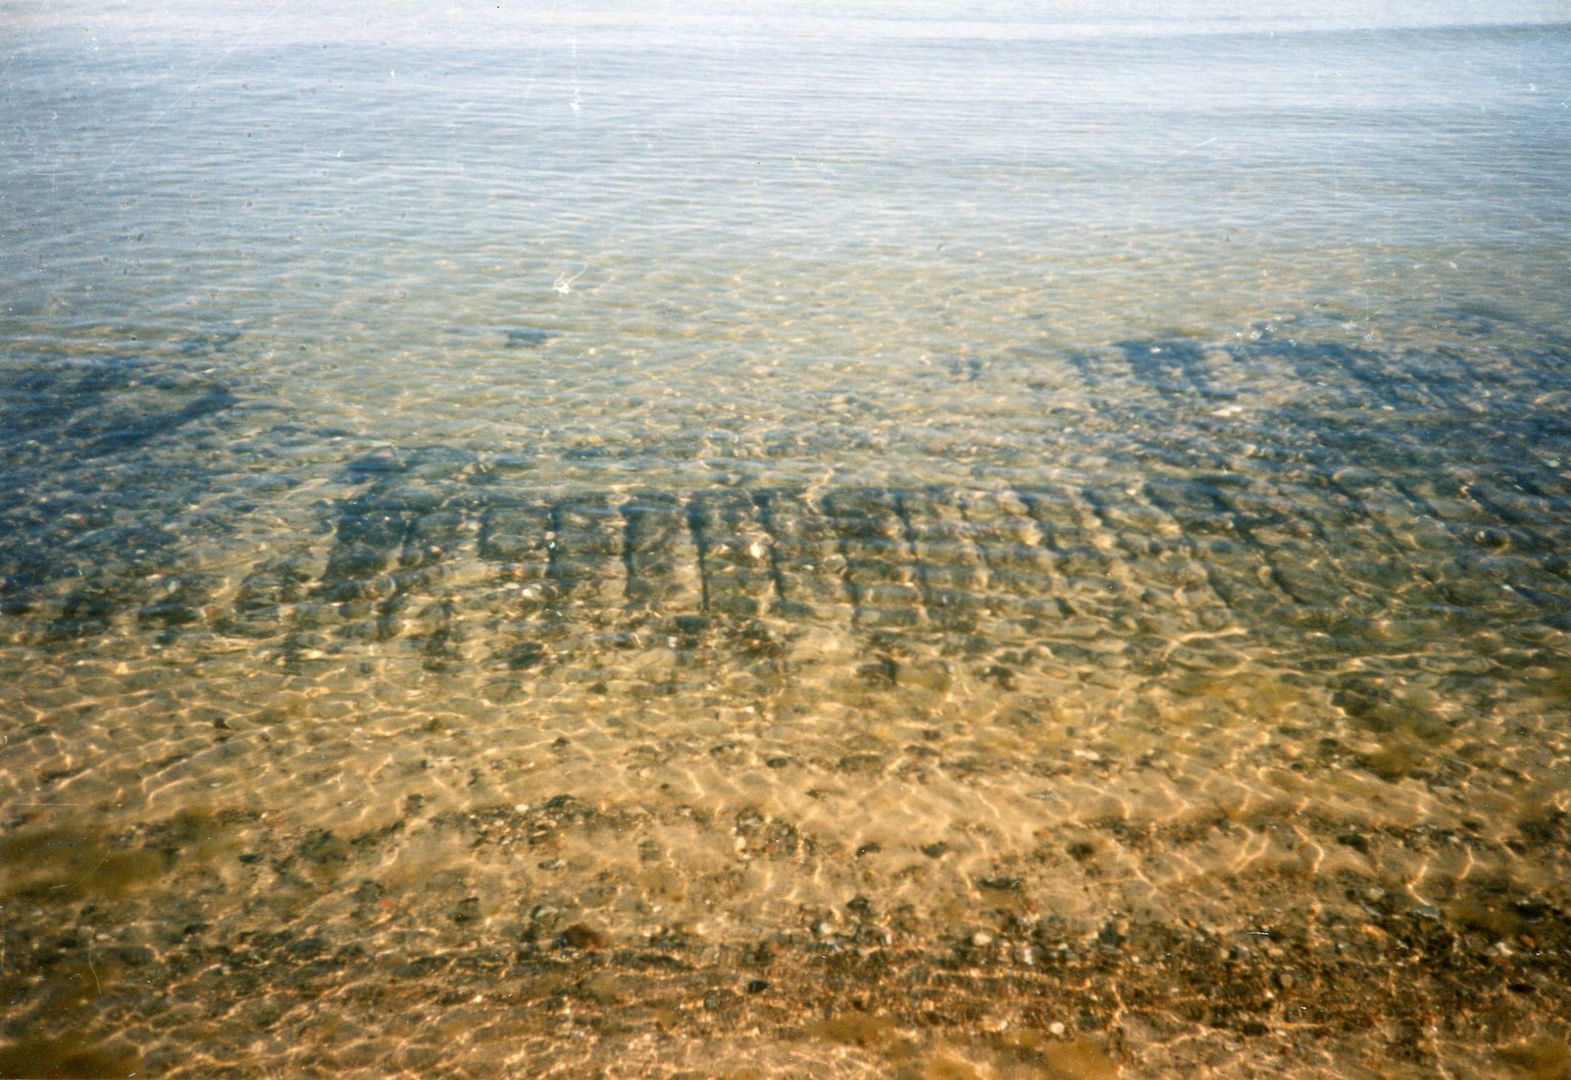 Aus dem Sand hervortretende Torfbänke zeigen, dass sich das Moor bis an die Schifffahrtslinie erstreckte.